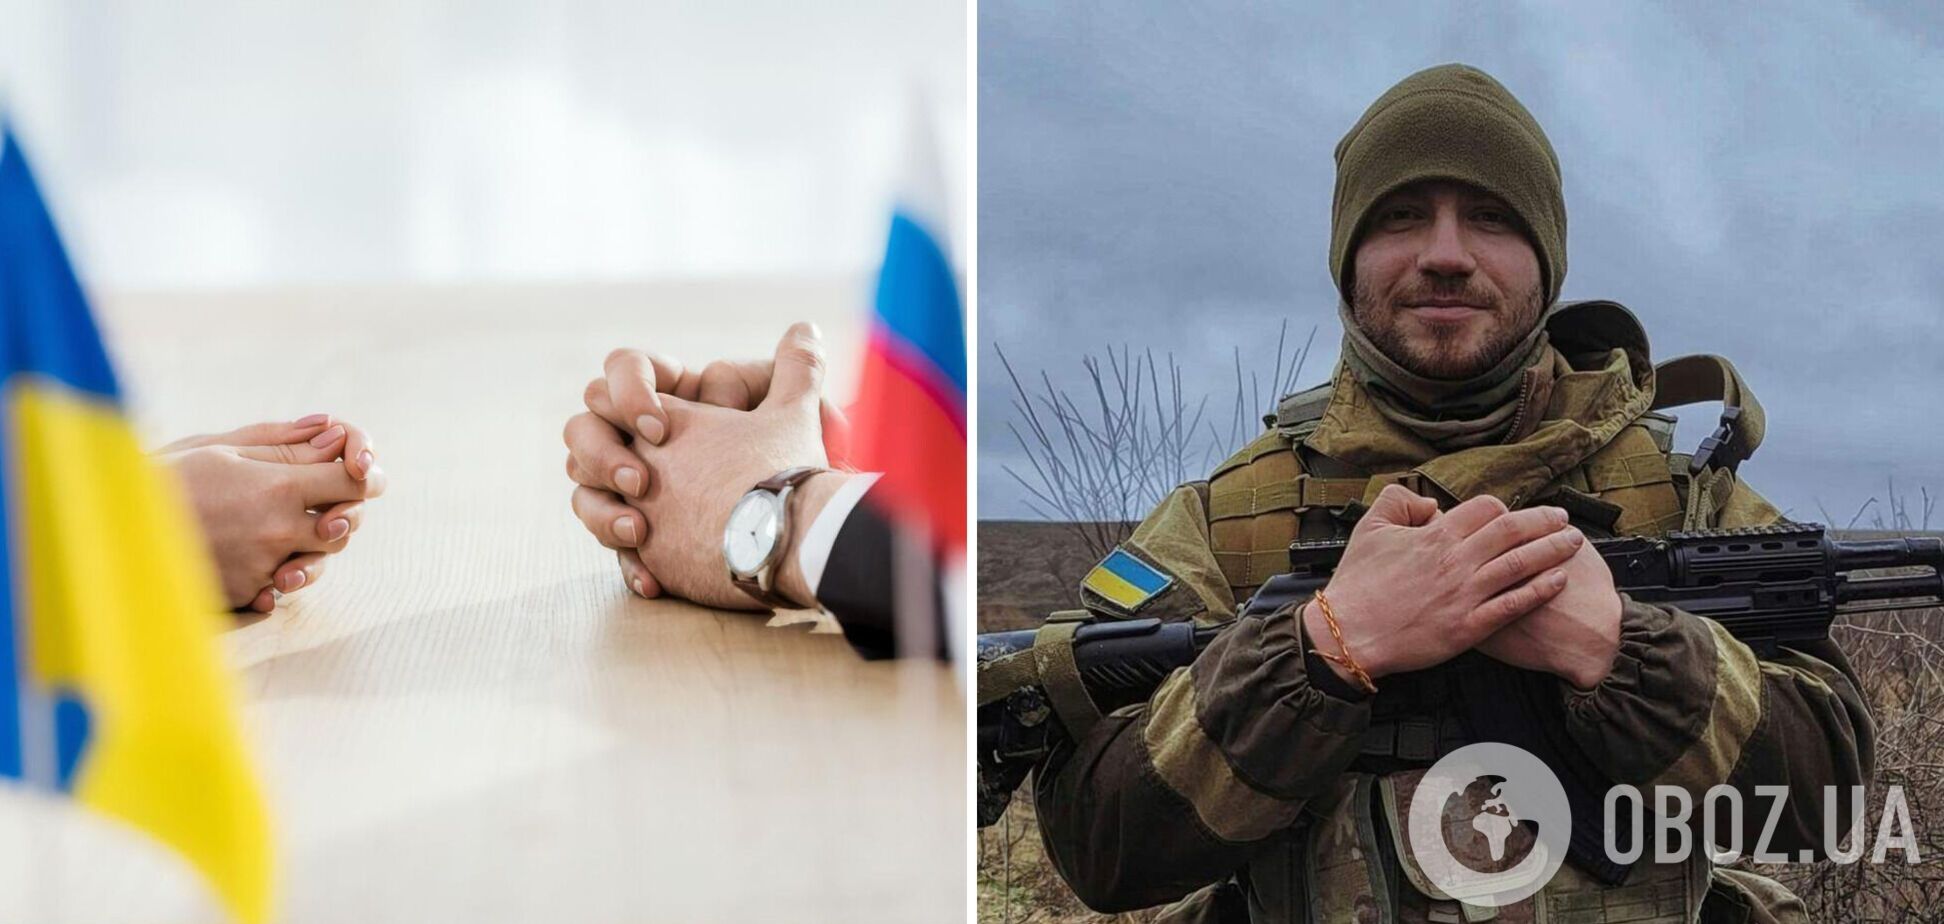 Украине не о чем вести переговоры с террористами: украинский военный записал обращение к властям. Видео